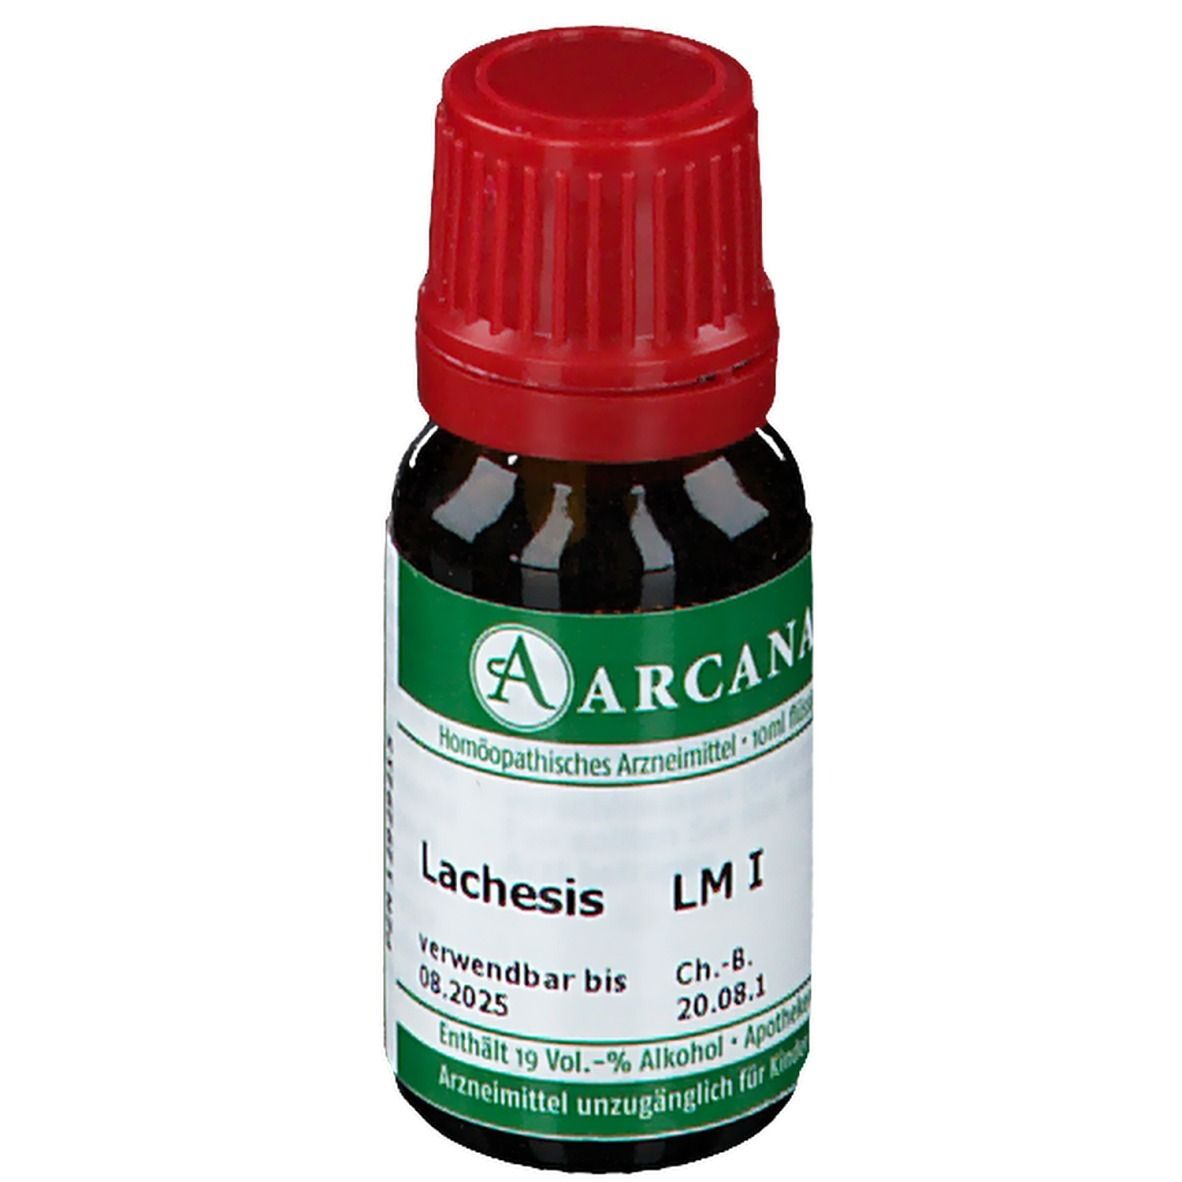 Arcana® Lachesis LM 1